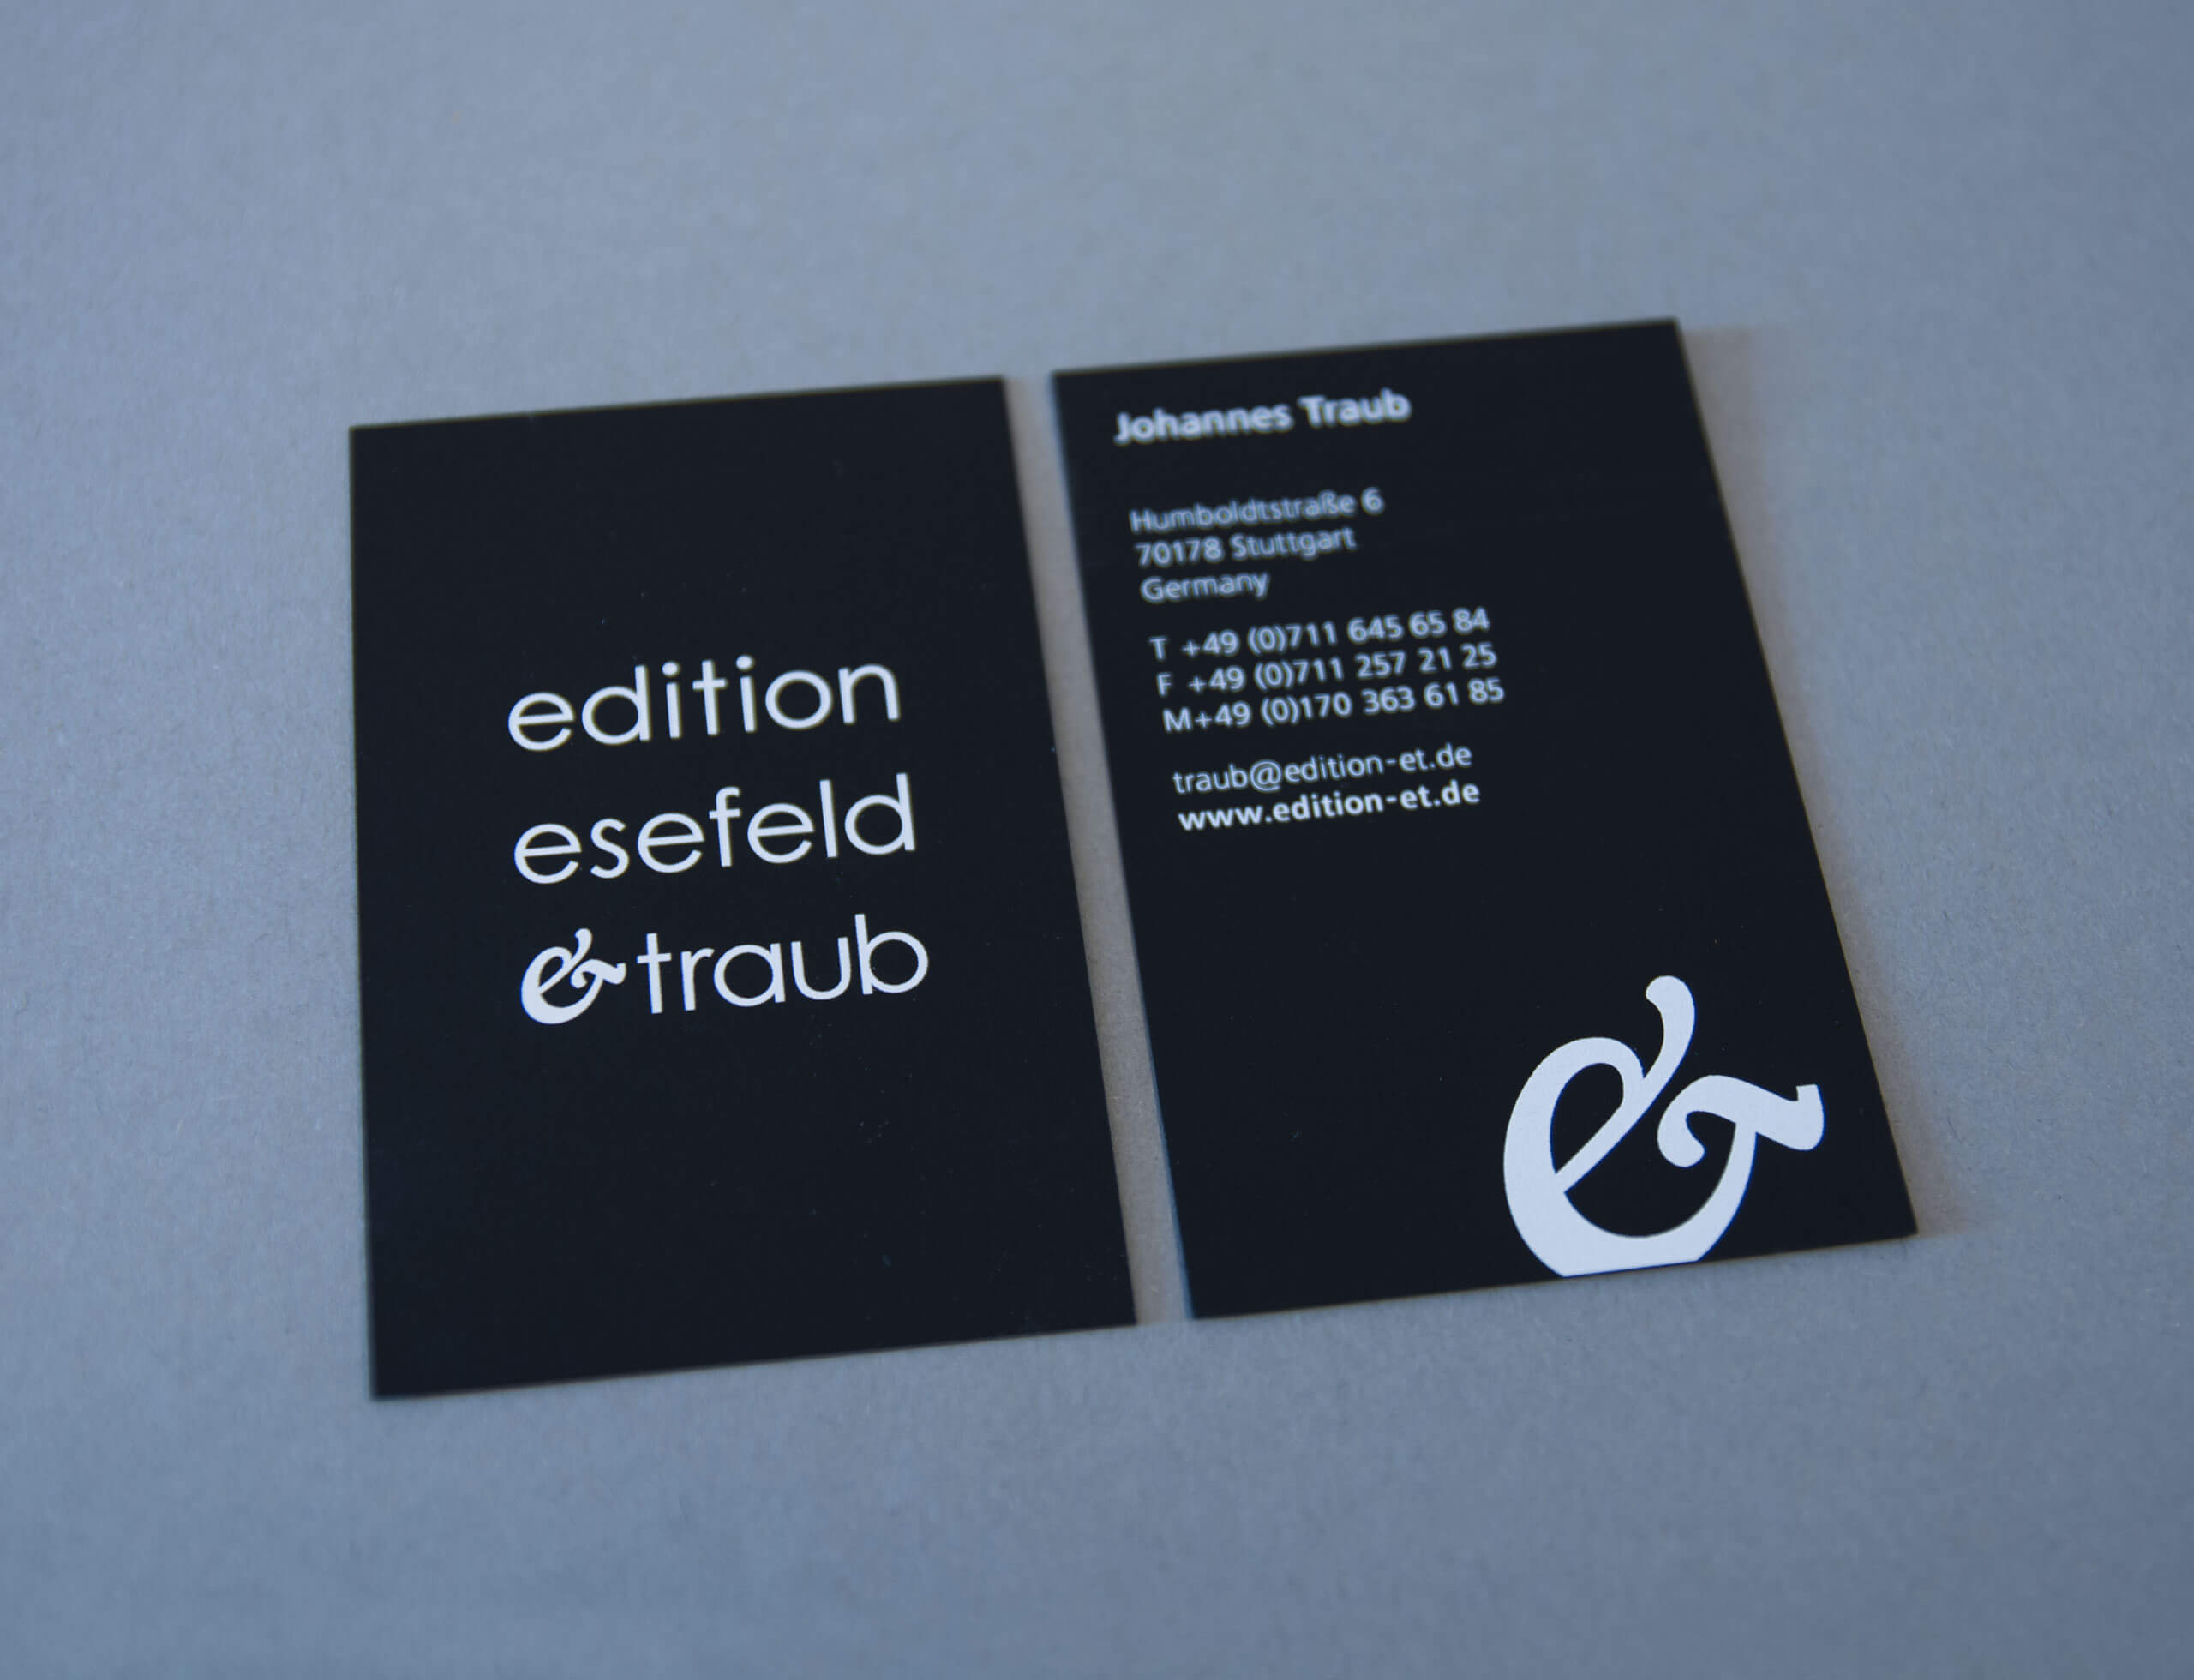 à propos kommunikation und design Gestaltung von Susanne Puzicha für die Edition Esefeld und Traub, Corporate Design, Visitenkarte mit Veredelung